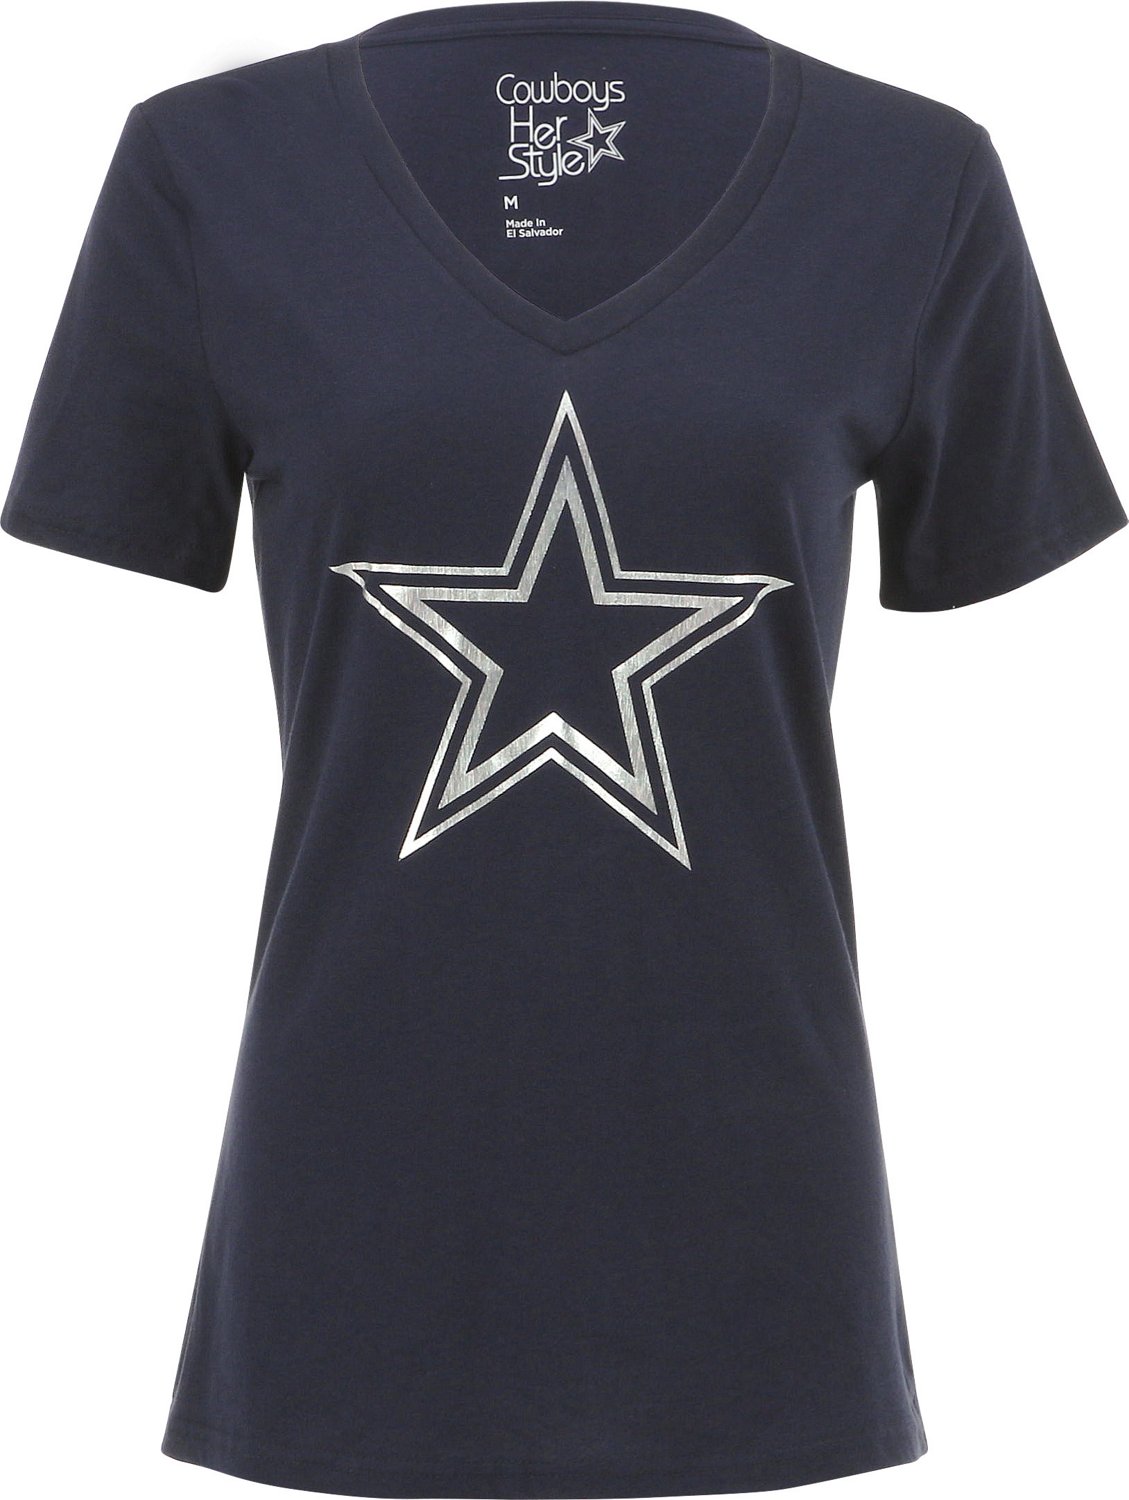 Dallas Cowboys Women's Apparel | Dallas Cowboys Women's Shop | Academy